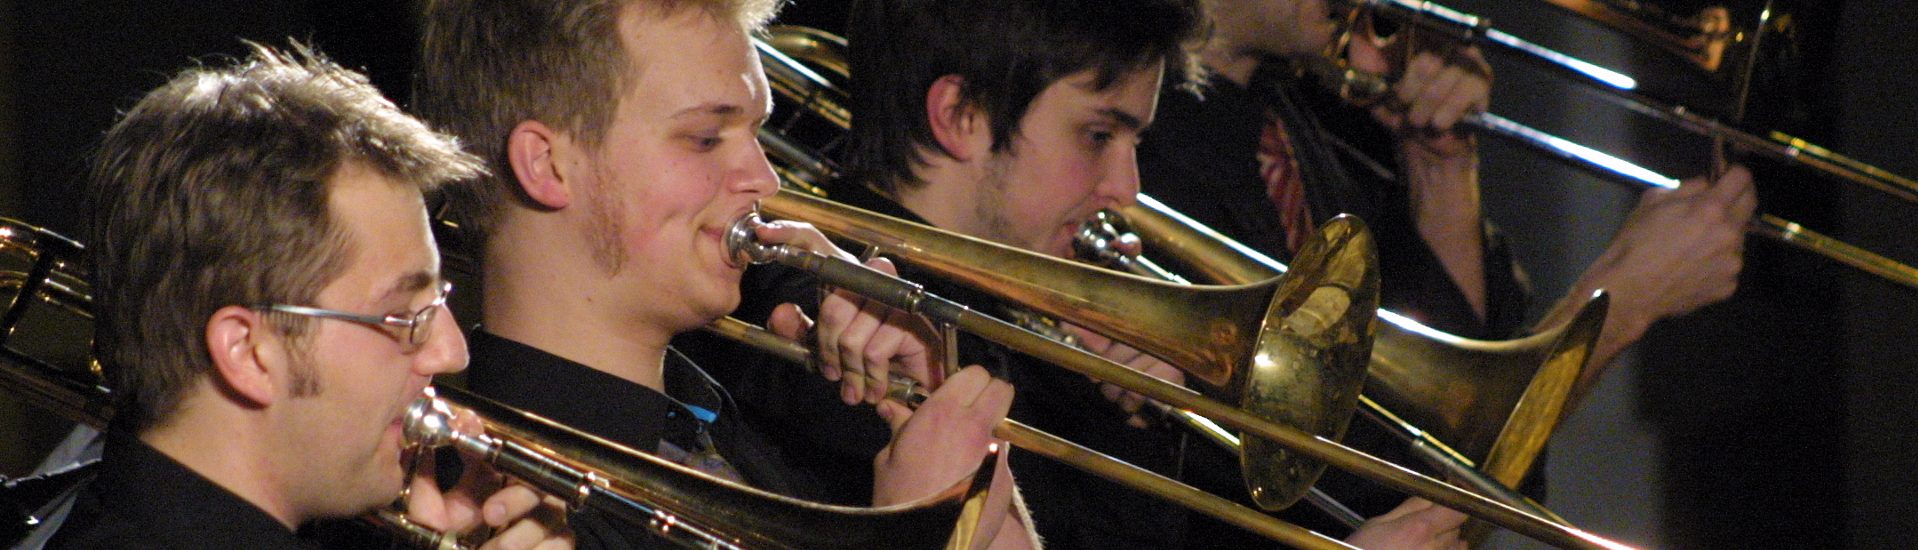 Männer mit Trompeten